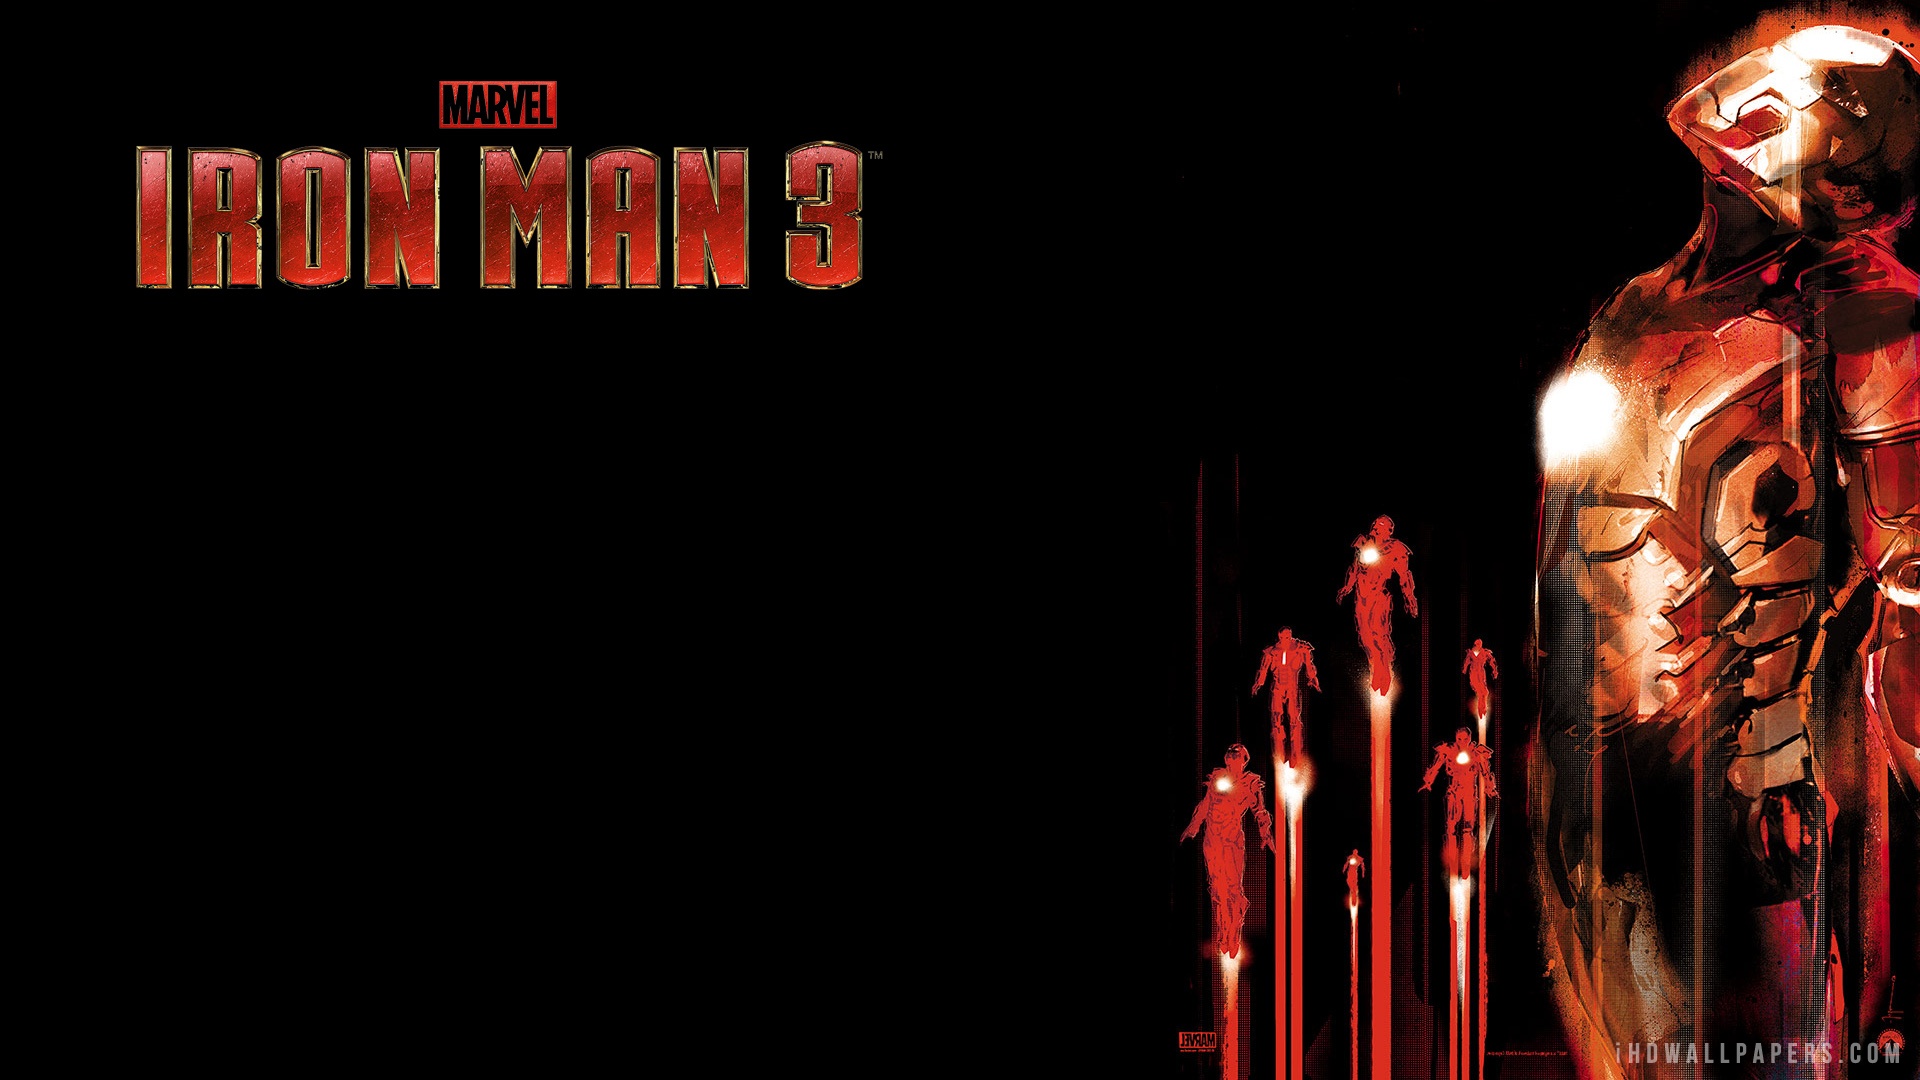 Iron Man 3 IMAX 3D HD Wallpaper   iHD Wallpapers 1920x1080